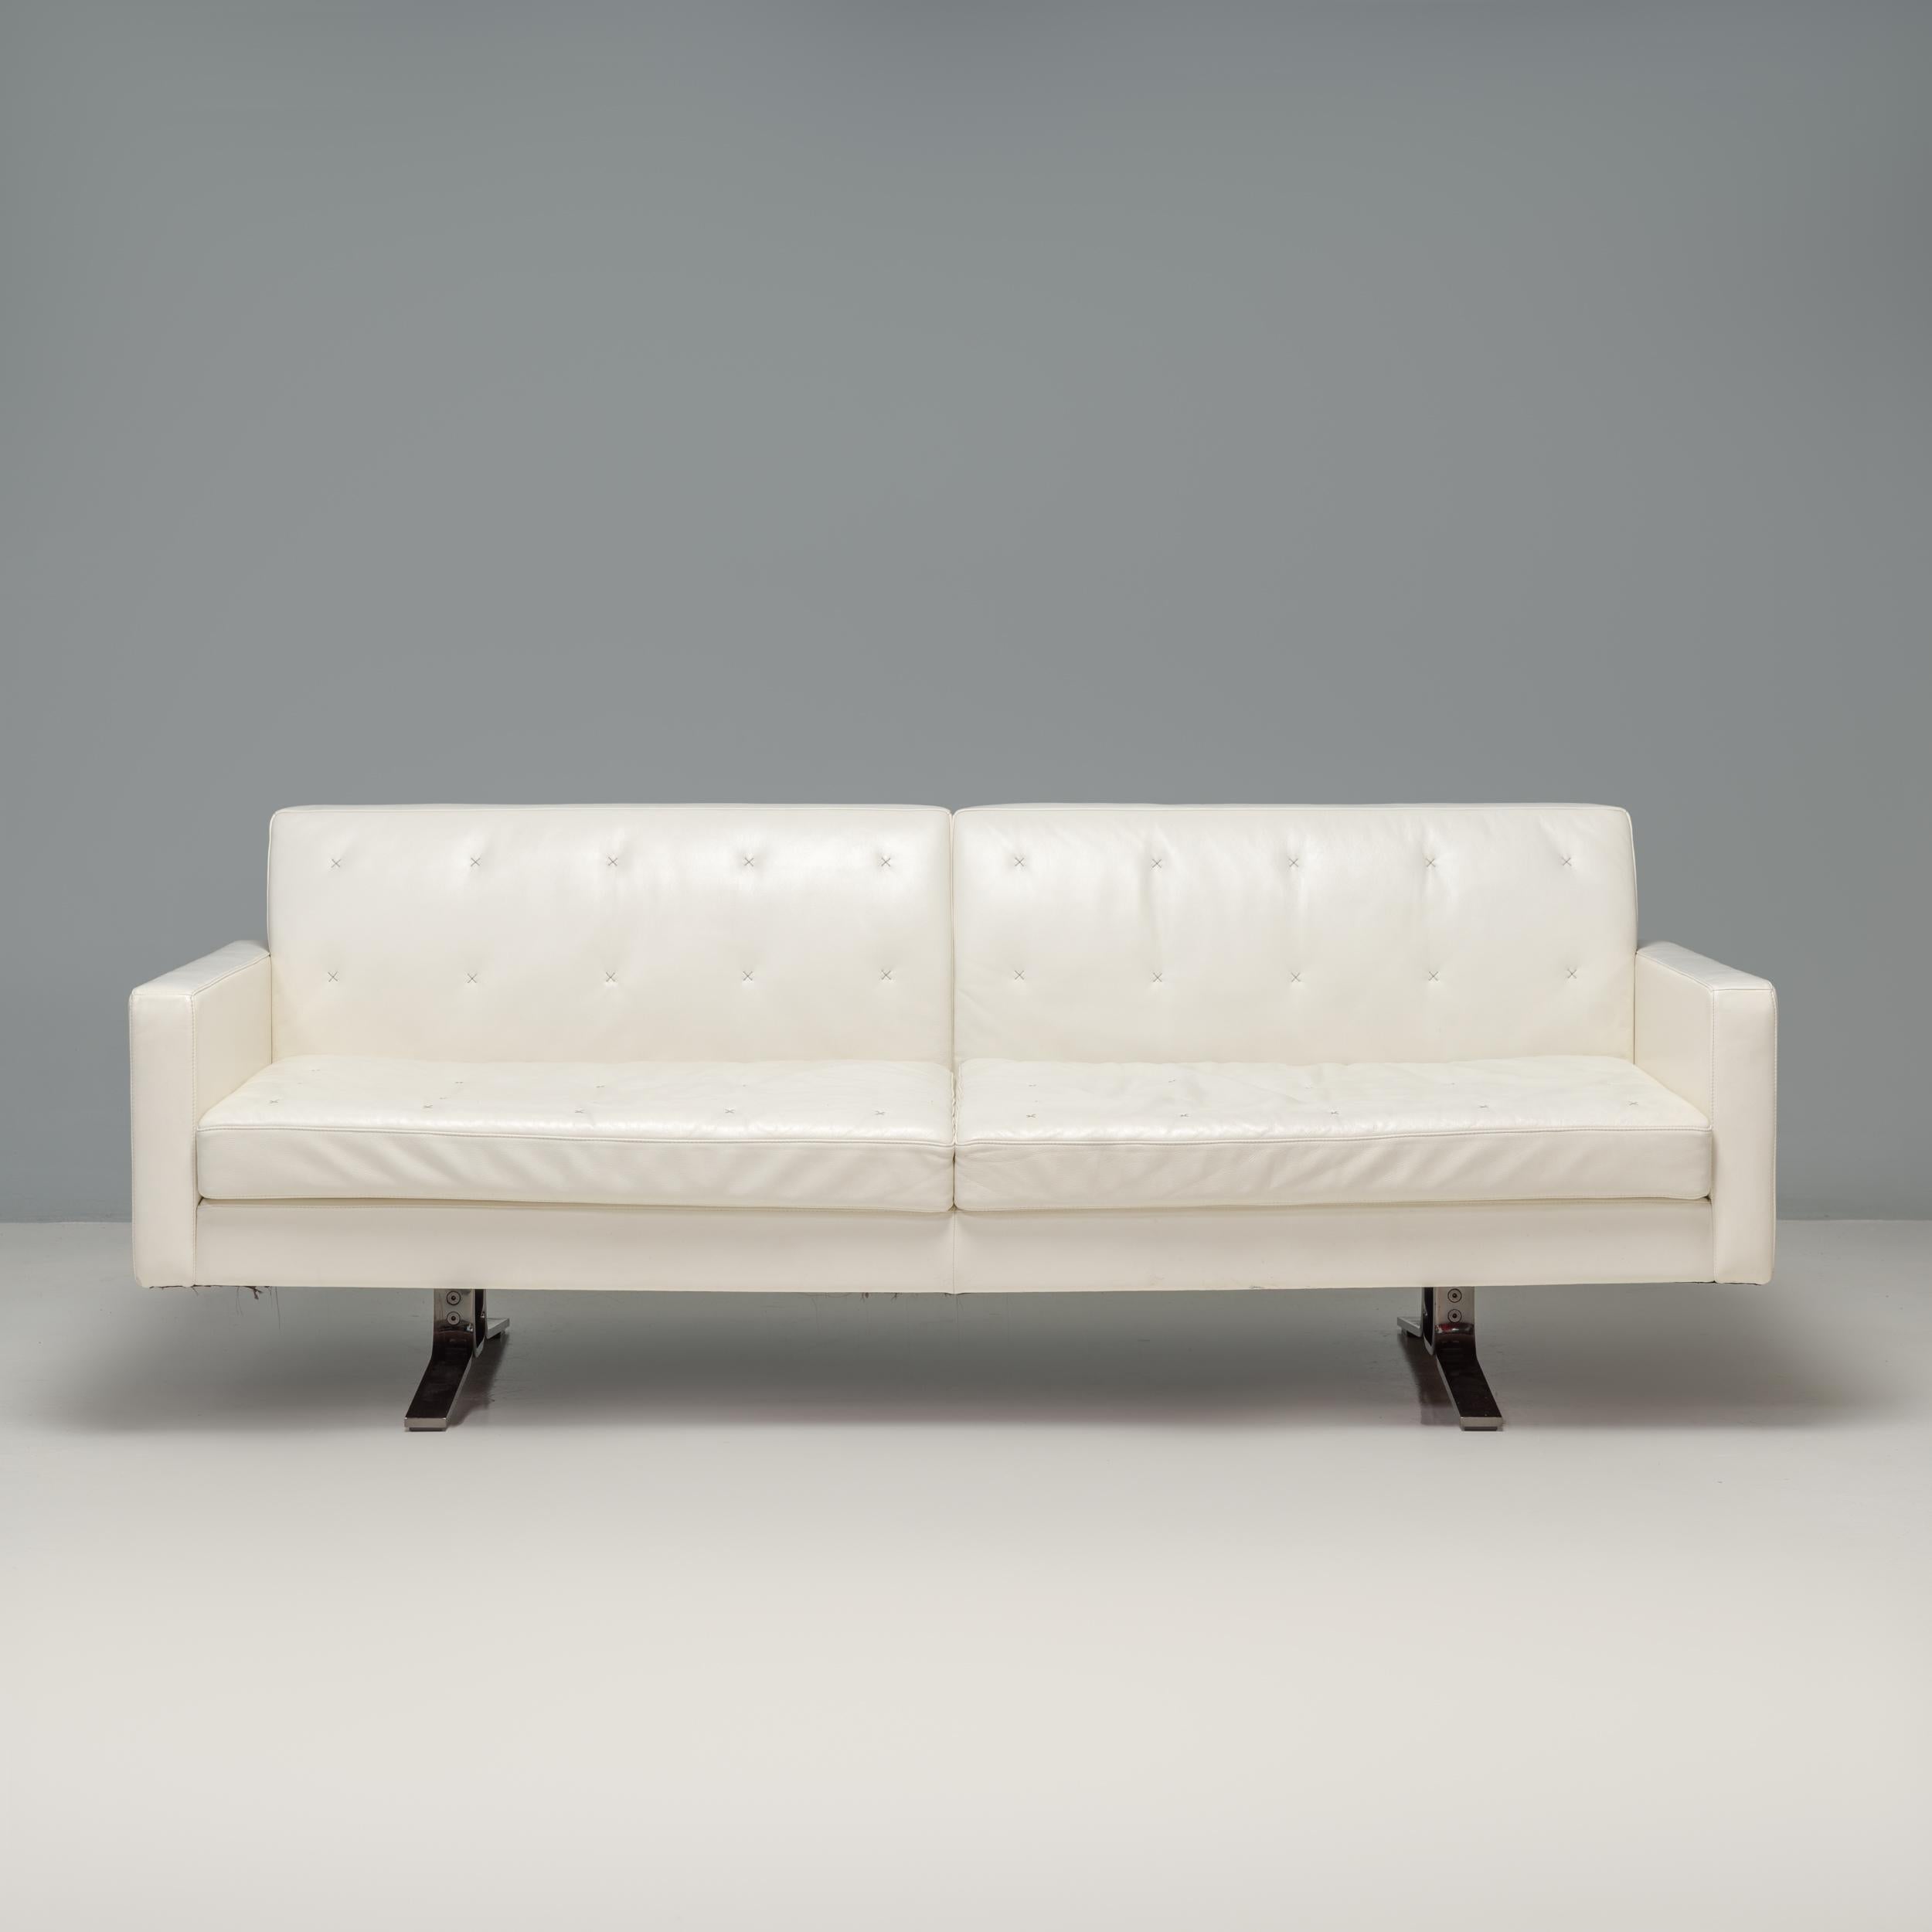 Conçu à l'origine par Jean-Marie Massaud pour Poltrona Frau en 2006, le canapé Kennedee est un fantastique exemple de design italien moderne.

Construit à partir d'un cadre en bois de hêtre massif, le canapé est entièrement recouvert de cuir blanc